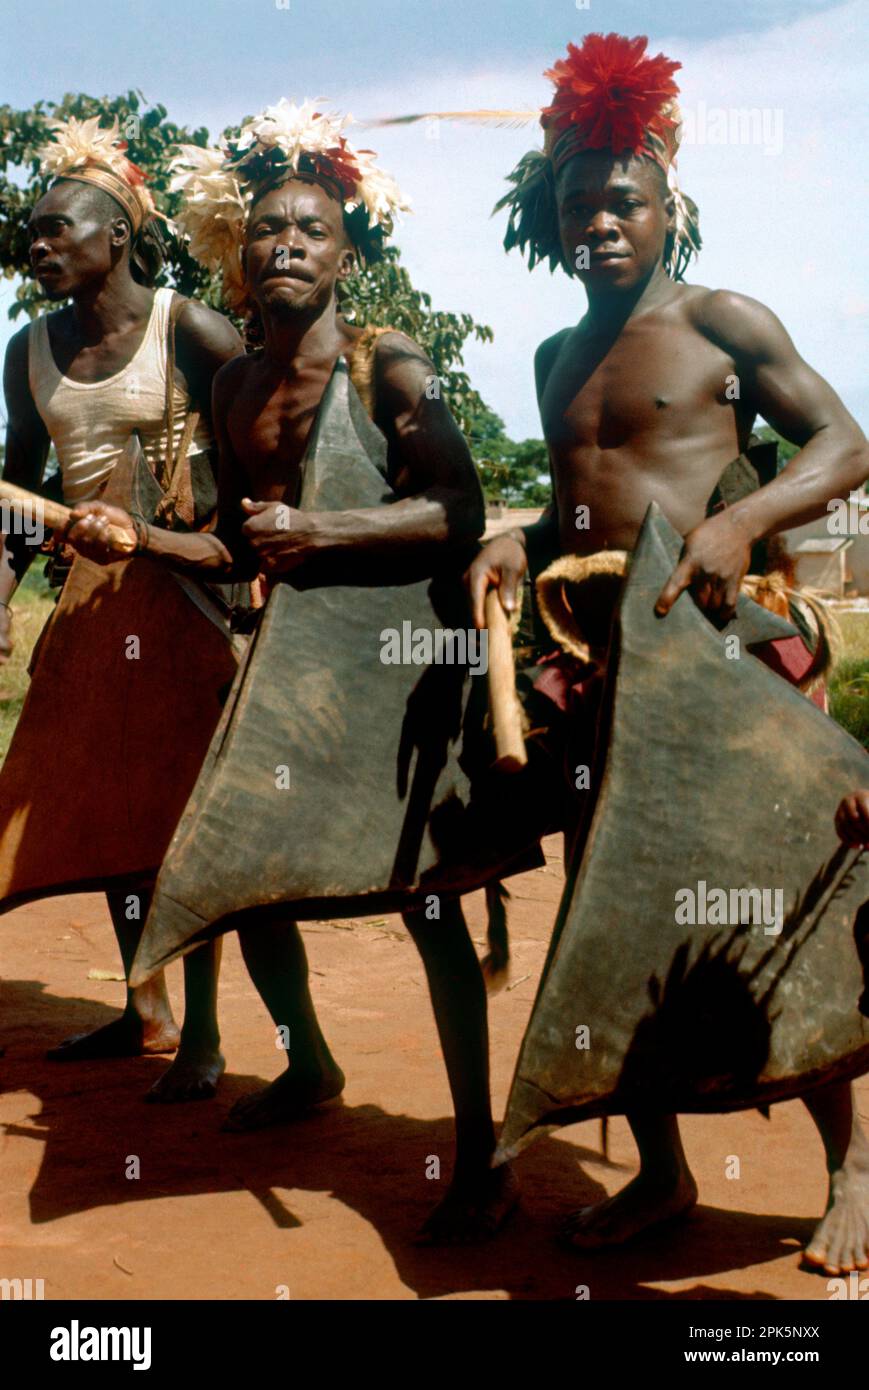 République démocratique du Congo: Festivités pour célébrer l'indépendance de la Belgique, 30 juin 1960. Mangbetu hommes jouant des tambours de fente. Banque D'Images